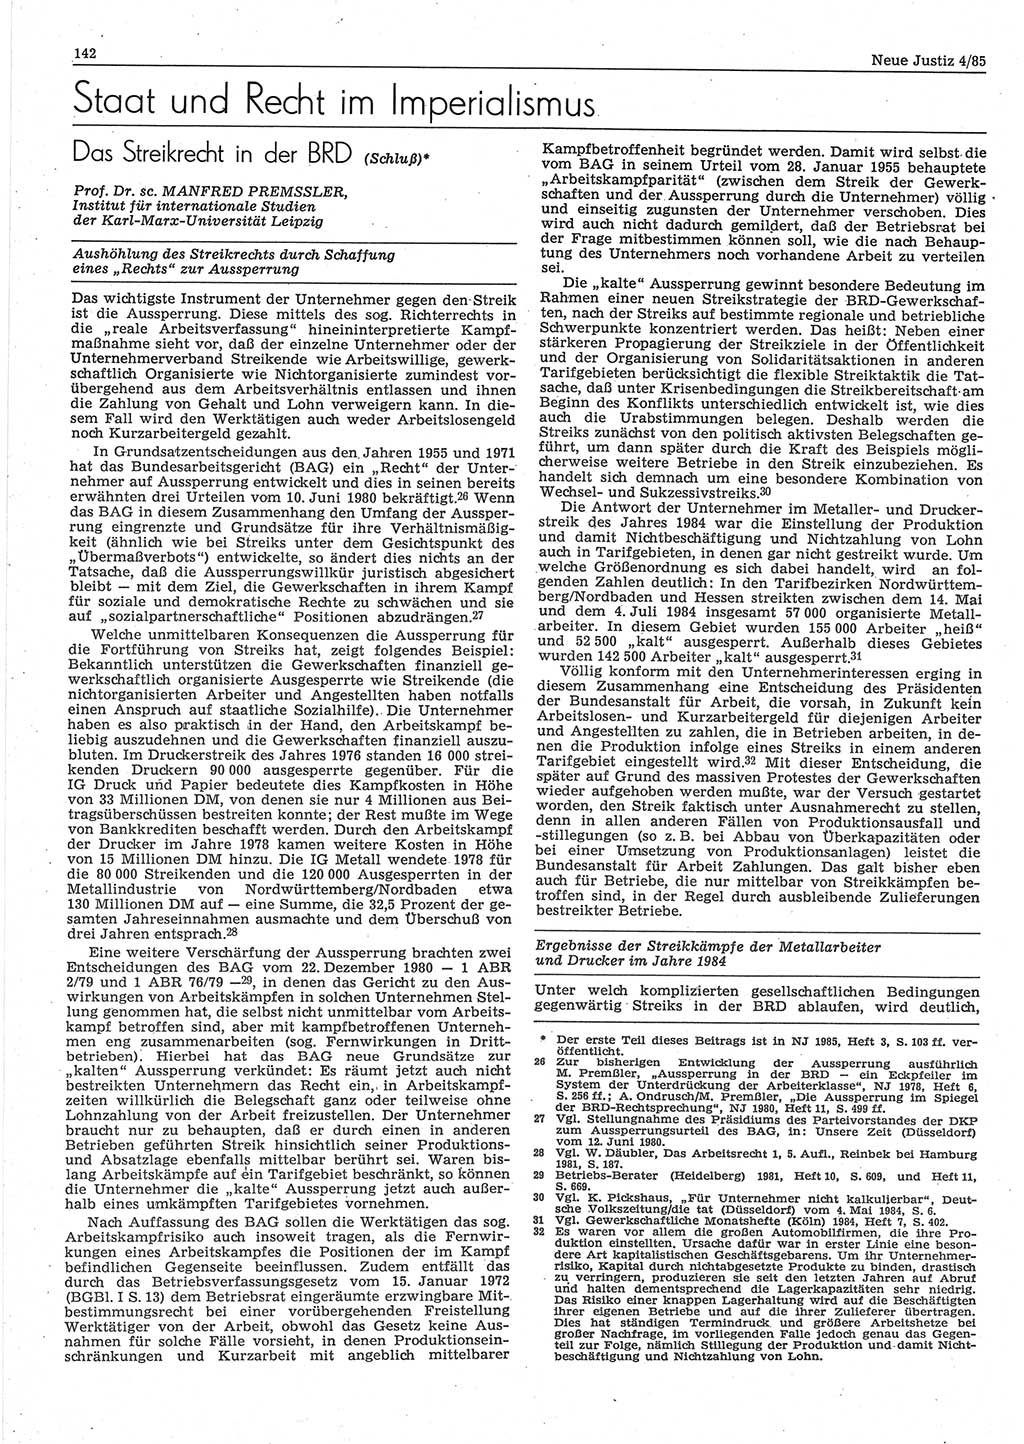 Neue Justiz (NJ), Zeitschrift für sozialistisches Recht und Gesetzlichkeit [Deutsche Demokratische Republik (DDR)], 39. Jahrgang 1985, Seite 142 (NJ DDR 1985, S. 142)